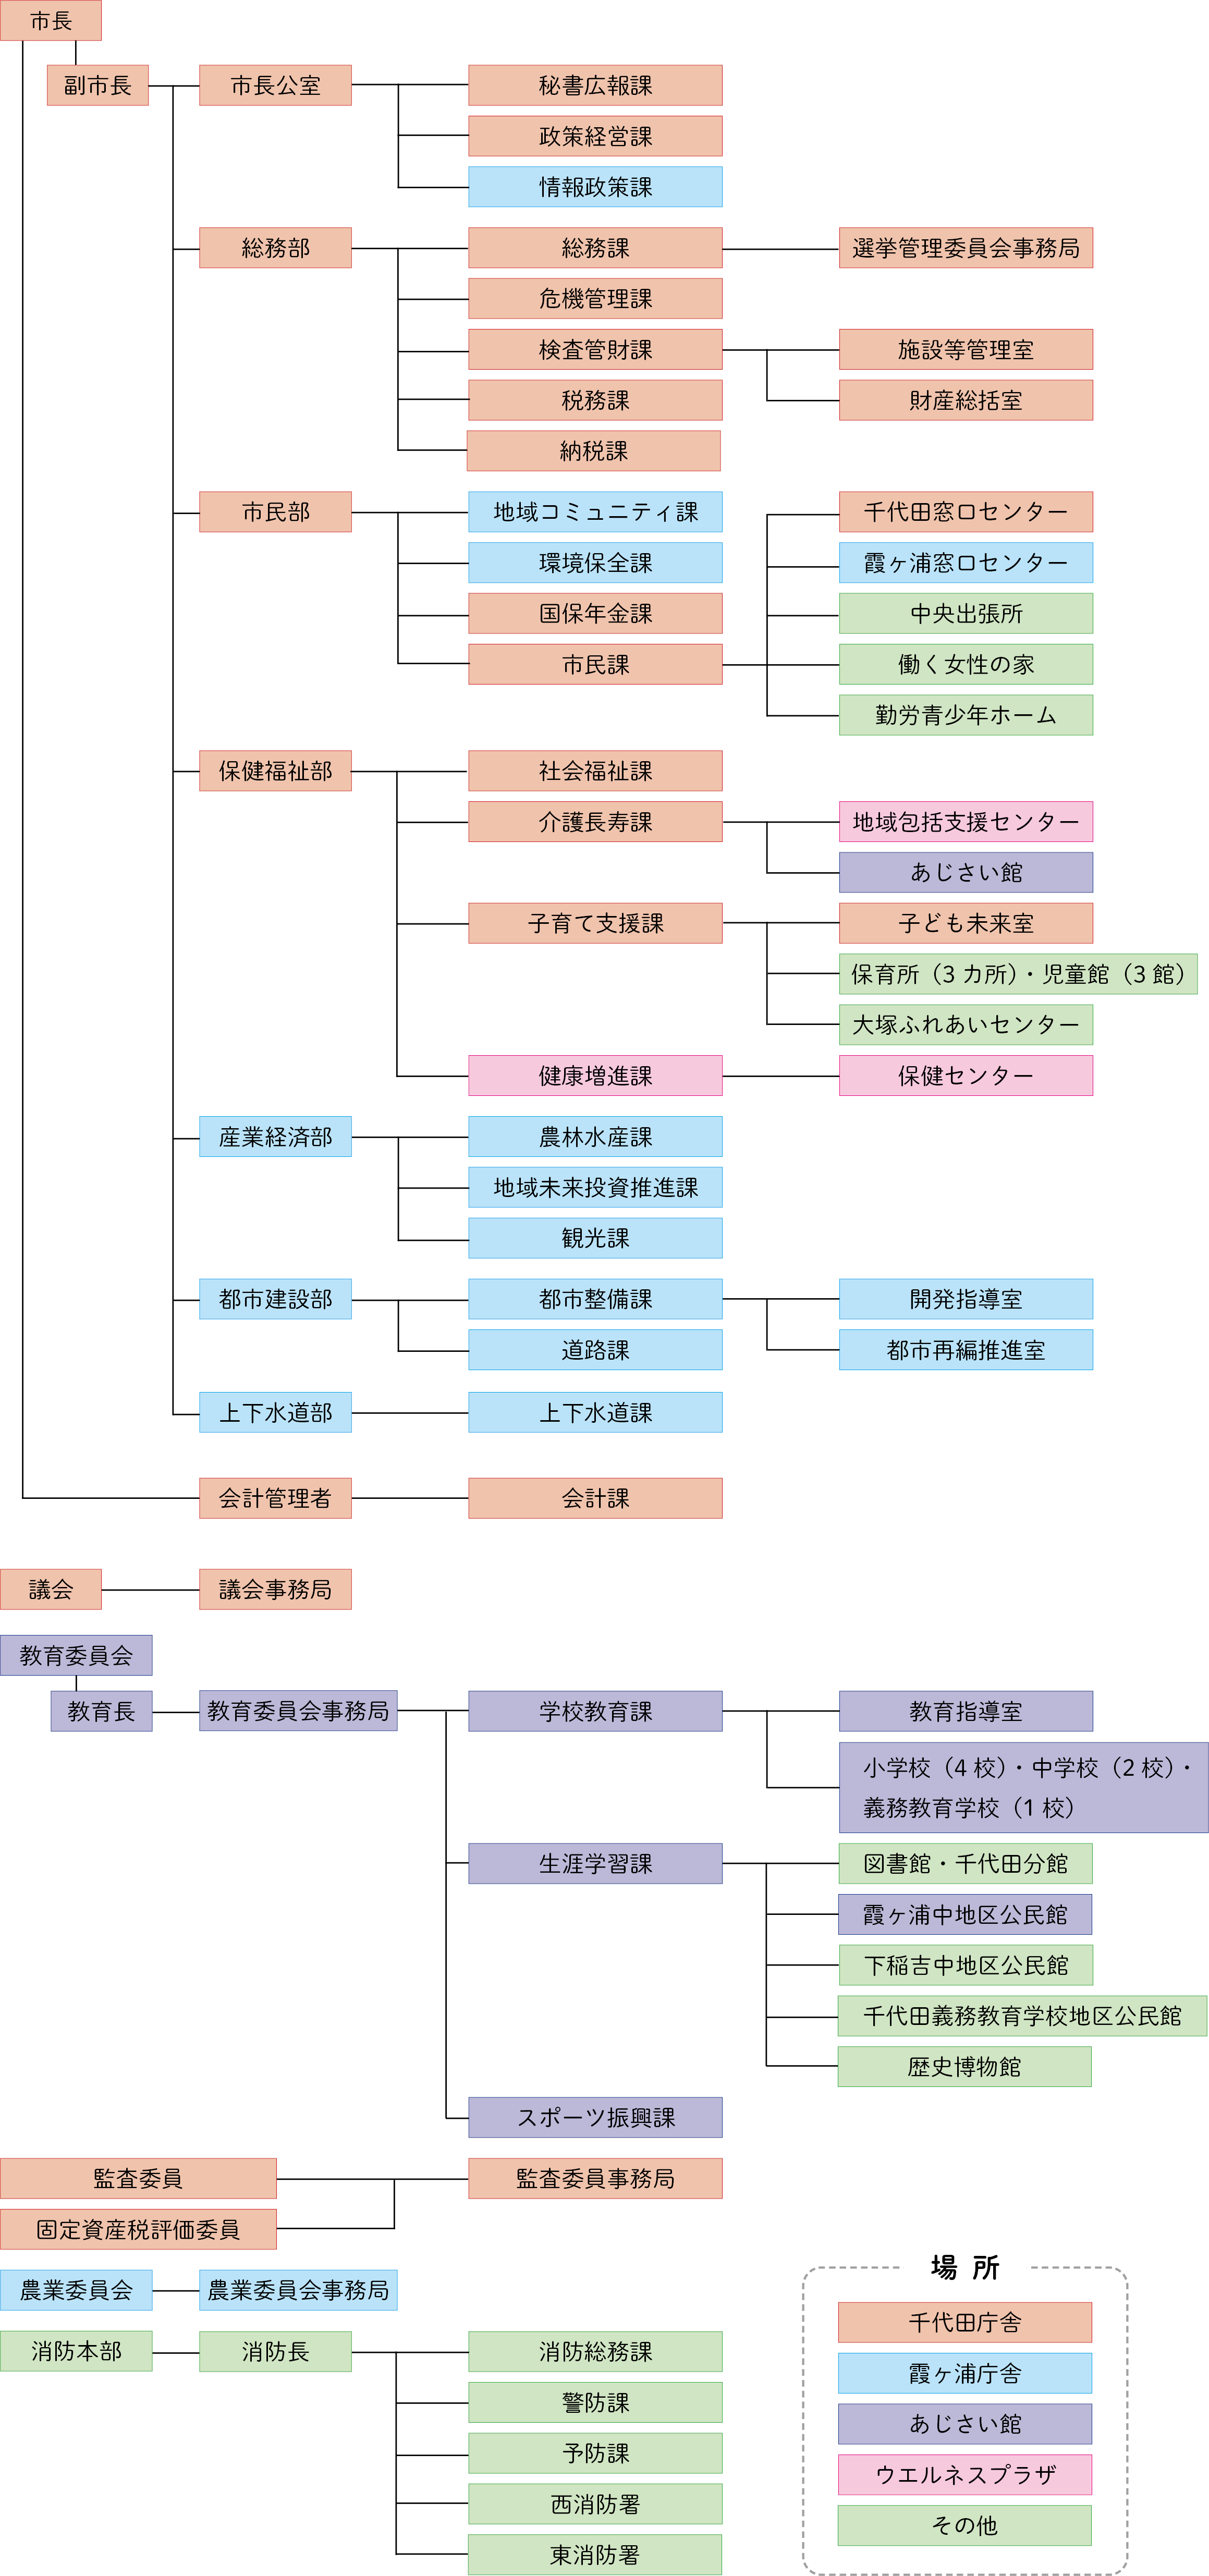 R5組織・機構図_1122